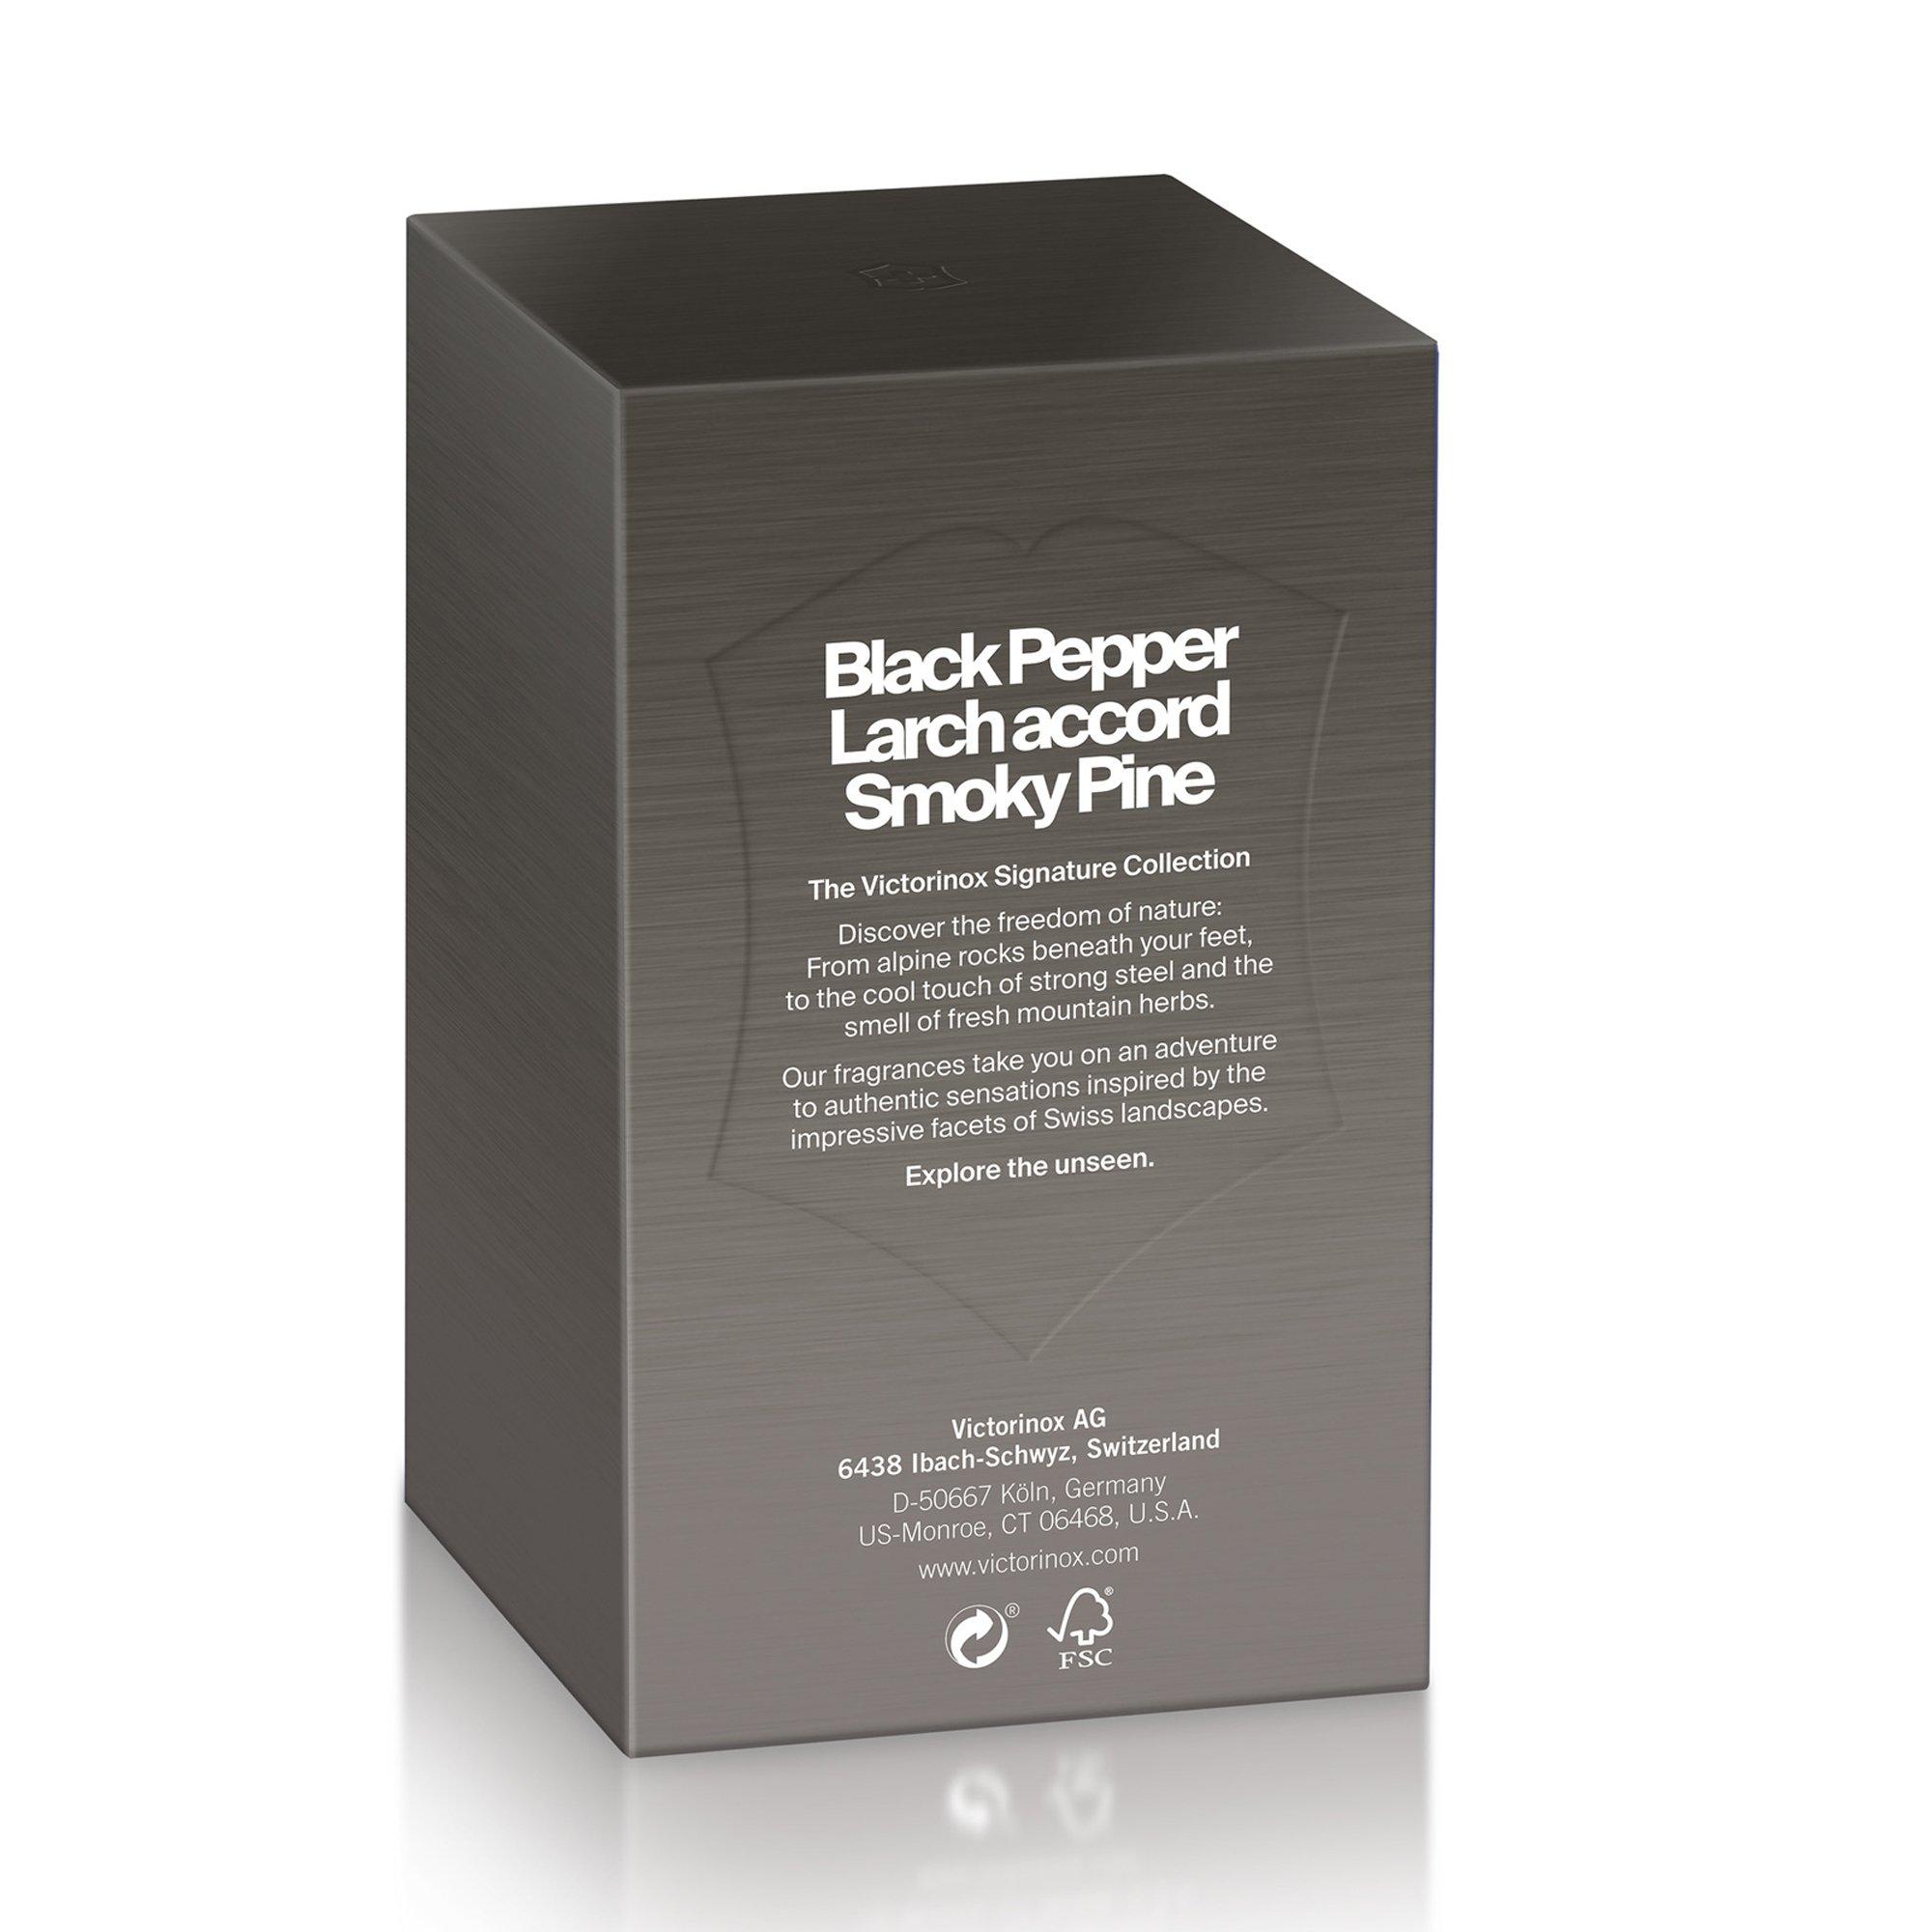 VICTORINOX BLACK STEEL Black Steel Eau de Toilette Spray 